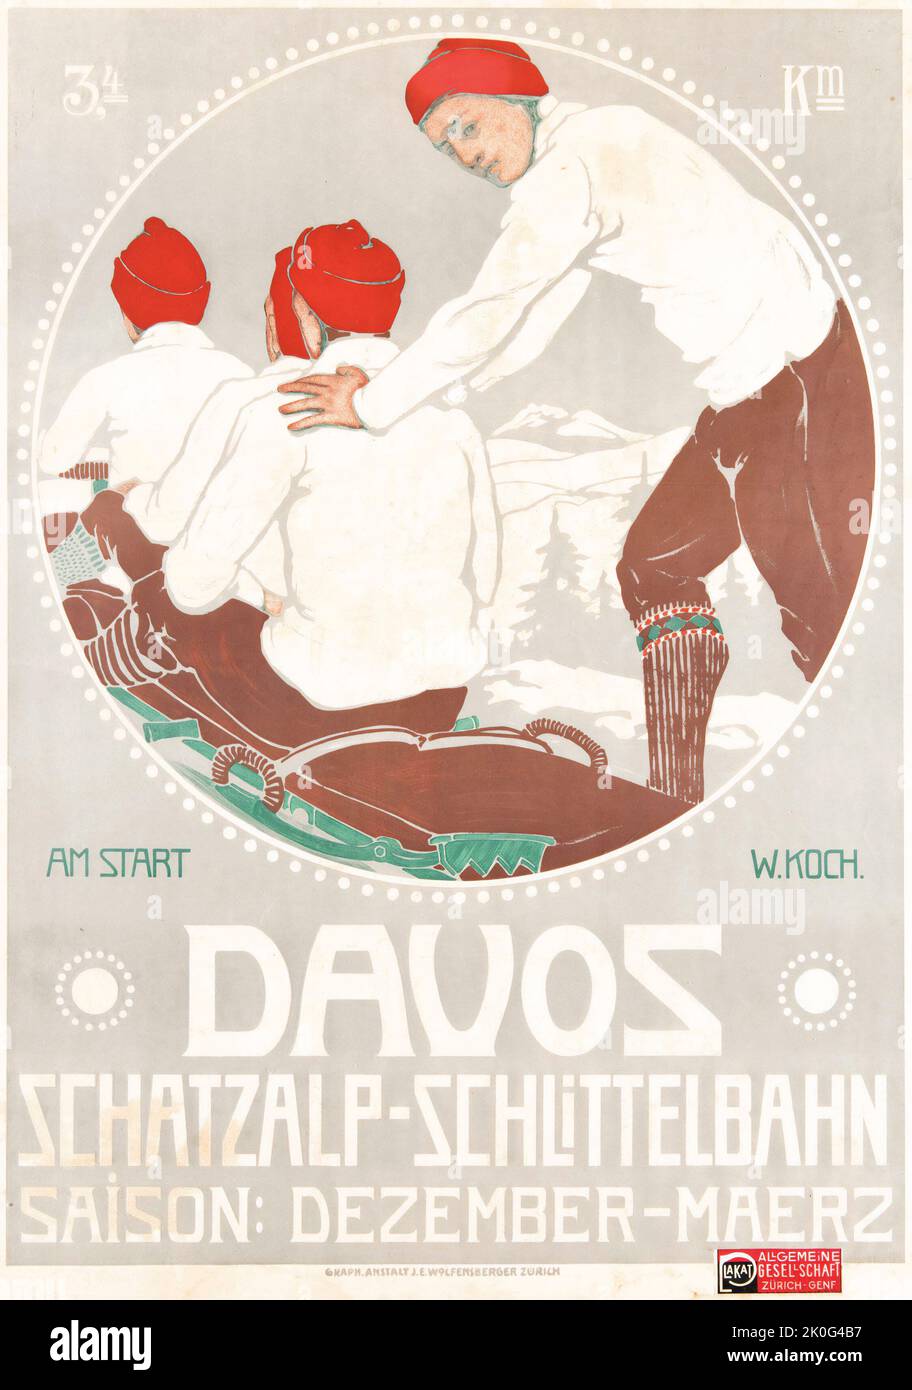 Walter Koch (1875-1925) Davos 1911 - Schweiz, Suisse, Switzerland - Travel poster Schatzalp-Schlittelbahn Stock Photo